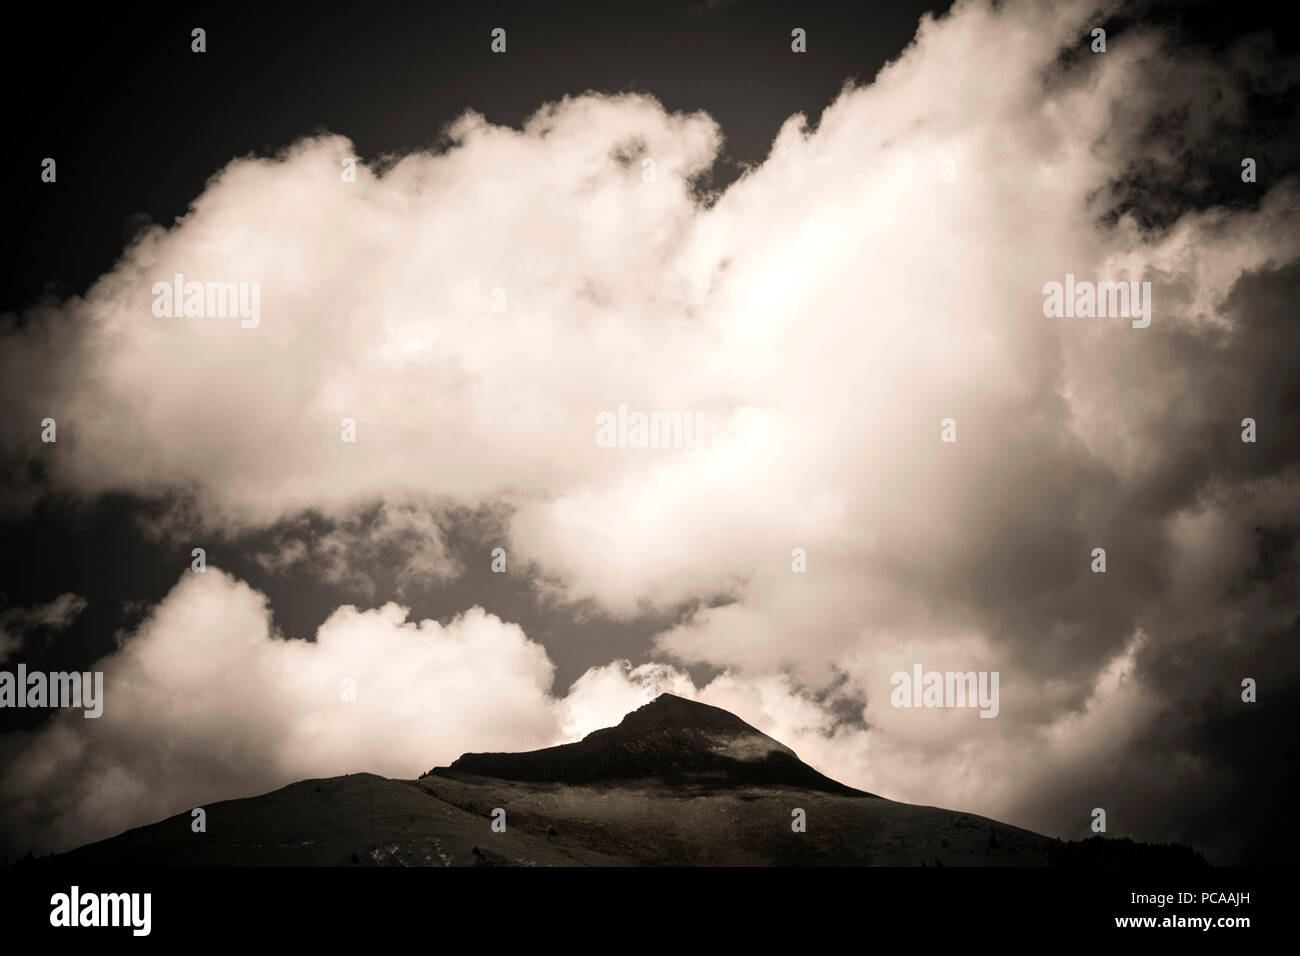 Nuages au-dessus d'un pic de montagne. Massif du Sancy. L'Auvergne. France Banque D'Images